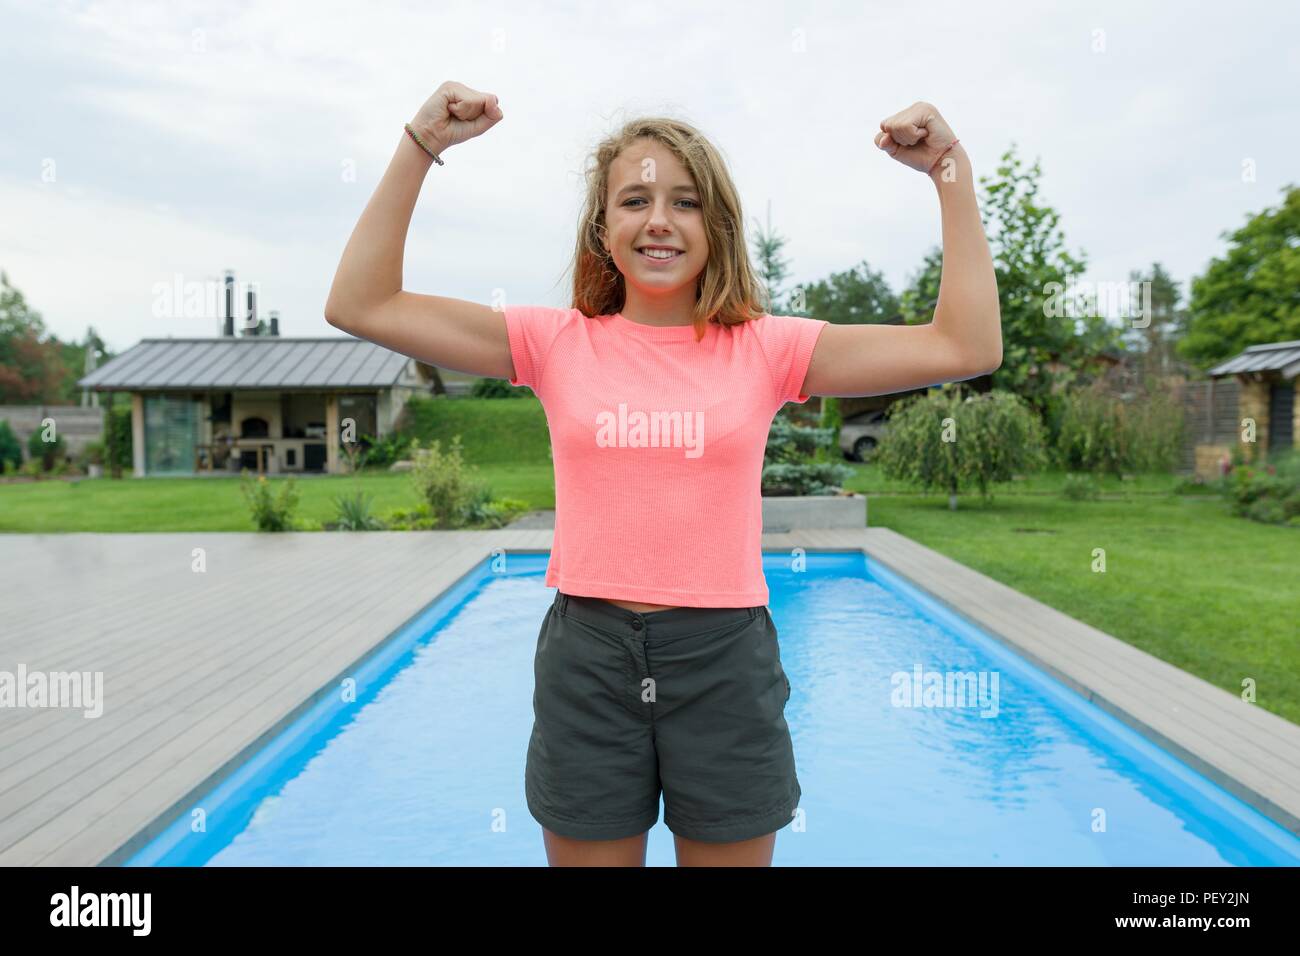 Les gens, la puissance, l'endurance, la force, la santé, le sport, fitness concept. Portrait of smiling teenage girl en plein air montrant les muscles, piscine d'arrière-plan gree Banque D'Images